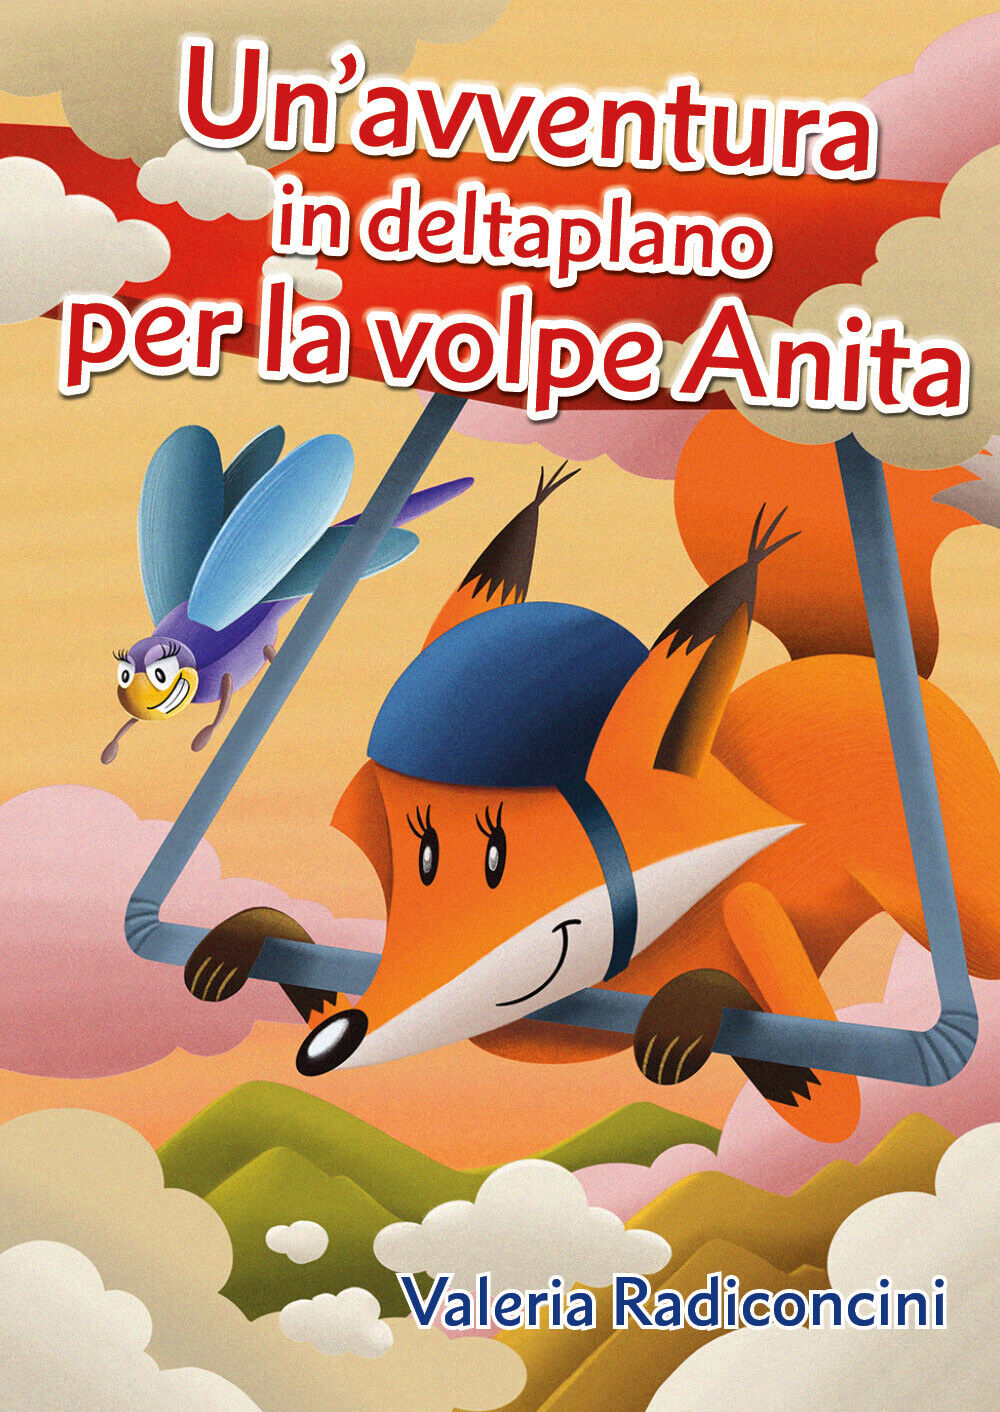 Un?avventura in deltaplano per la volpe Anita di Valeria Radiconcini,  2020,  Yo